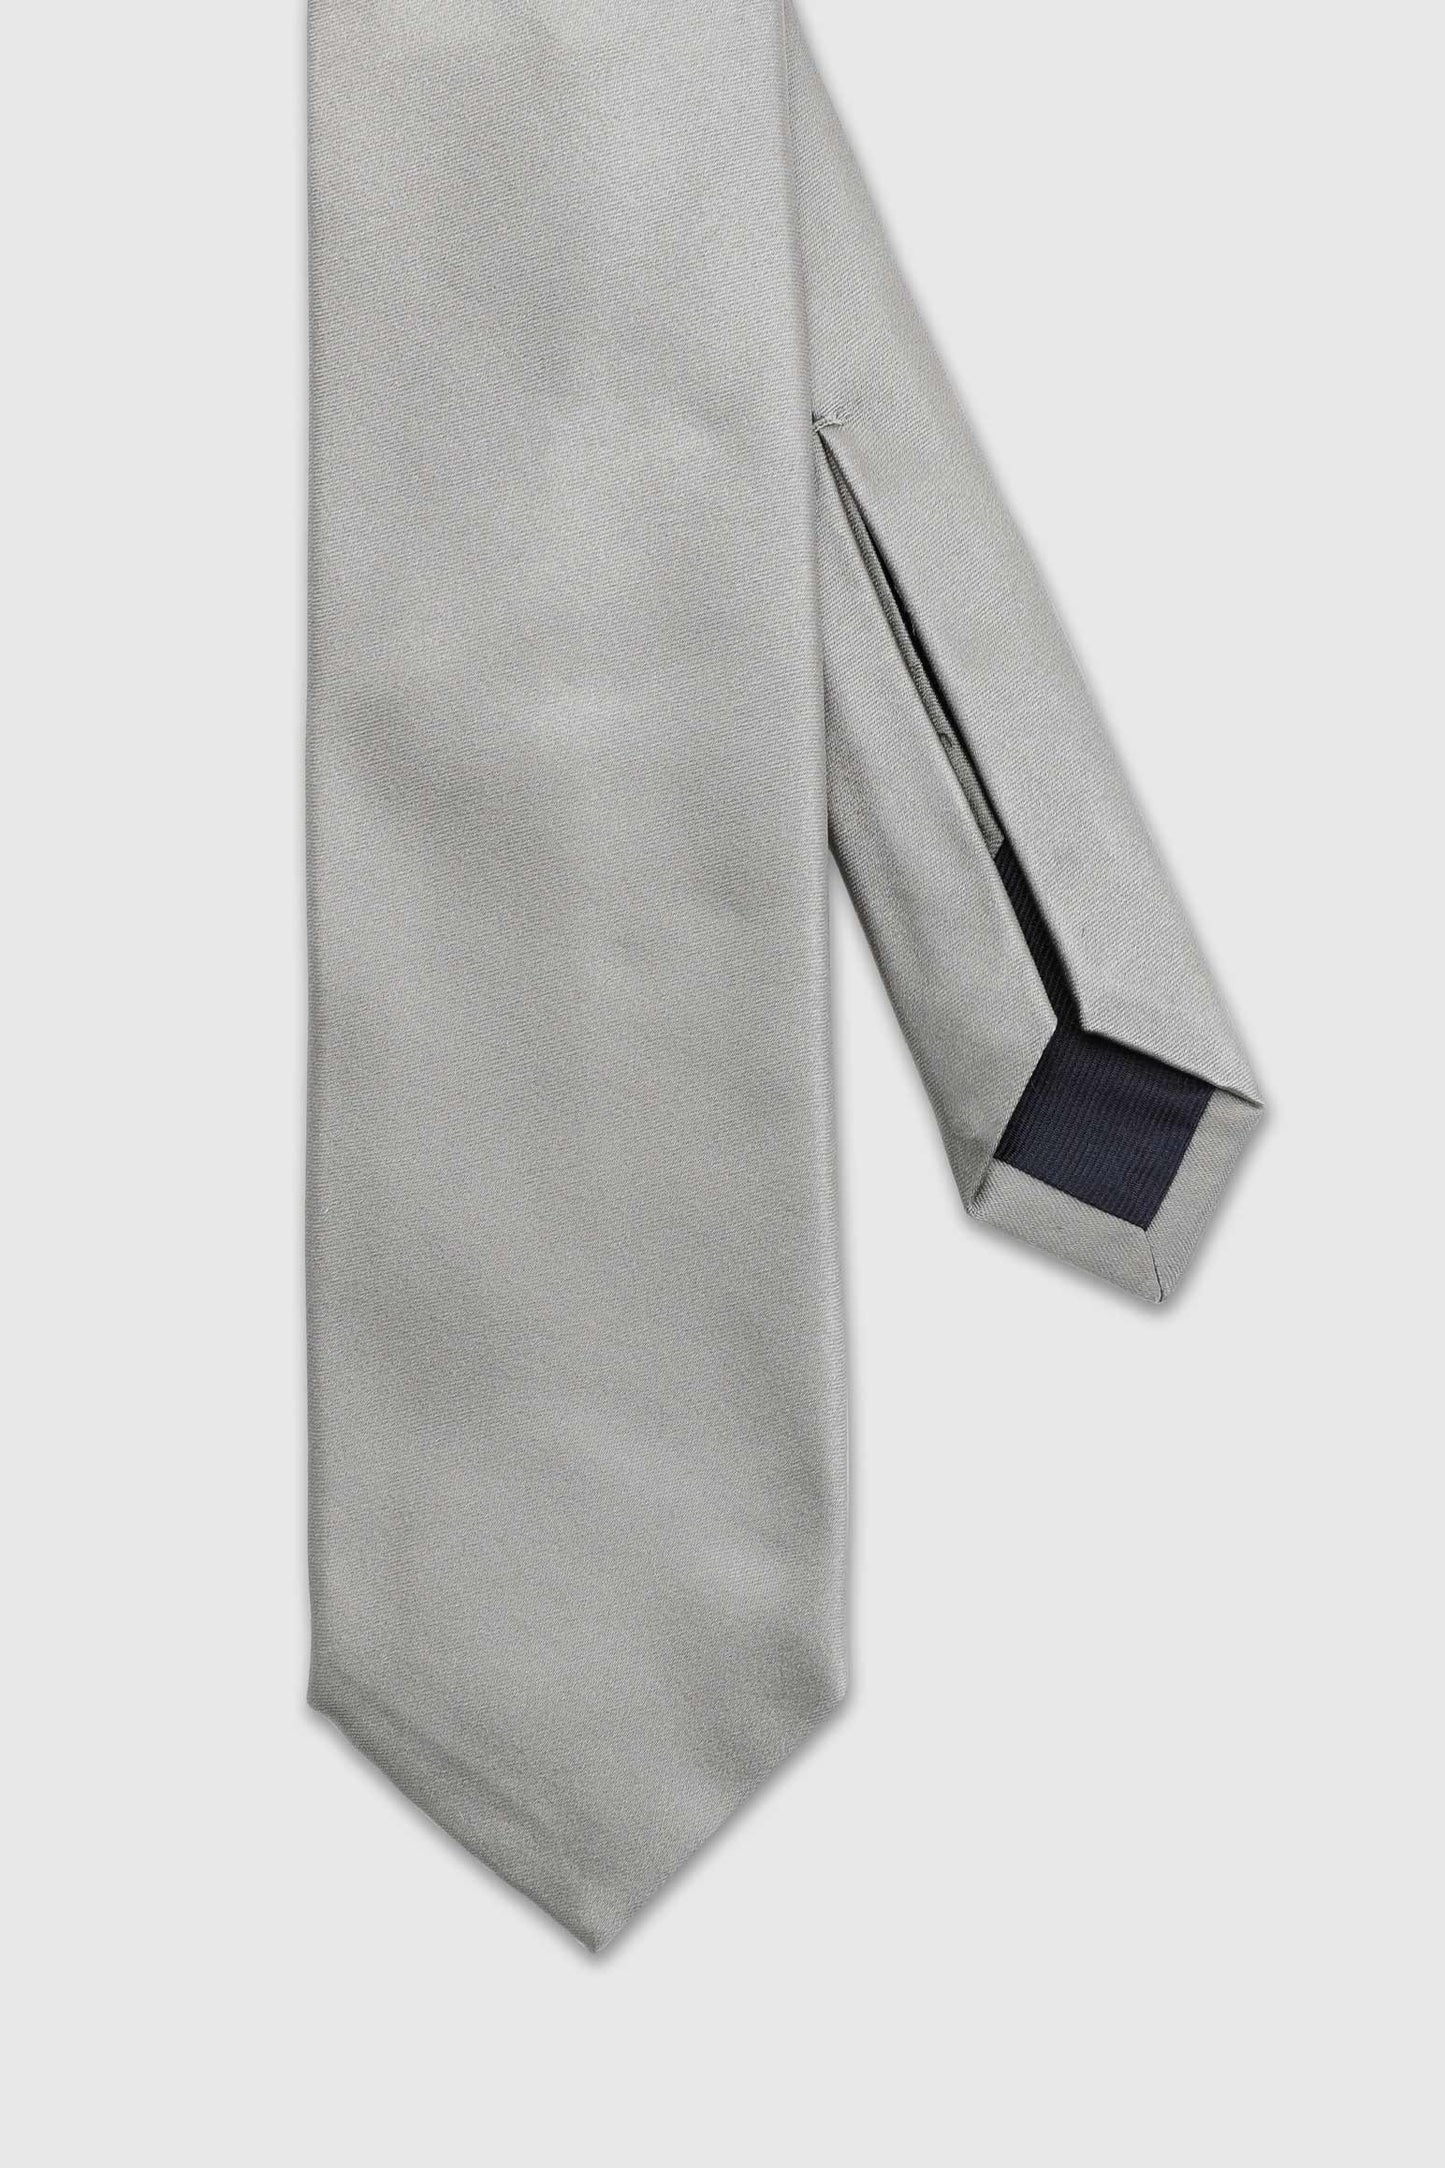 Cravate 7 plis en satin de soie gris argenté